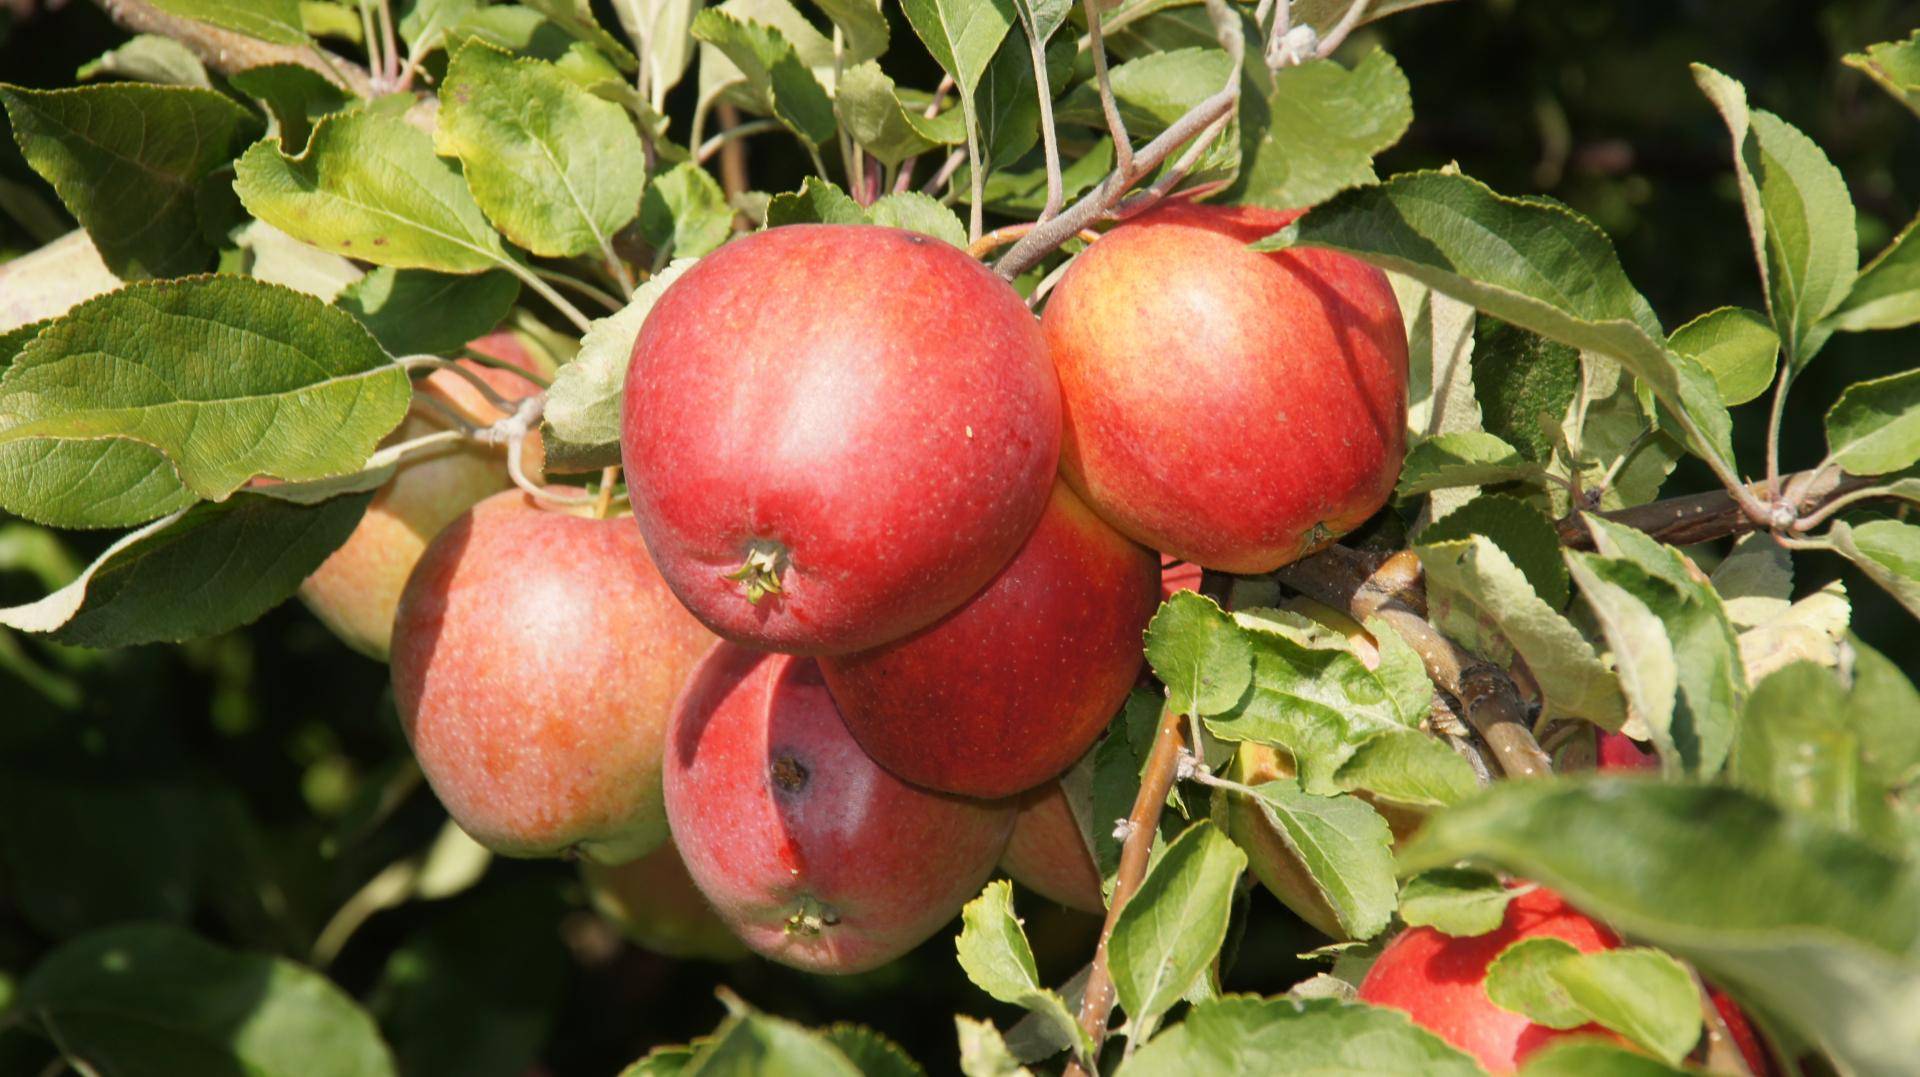 Описание яблони сорта боровинка, выращивание и уход